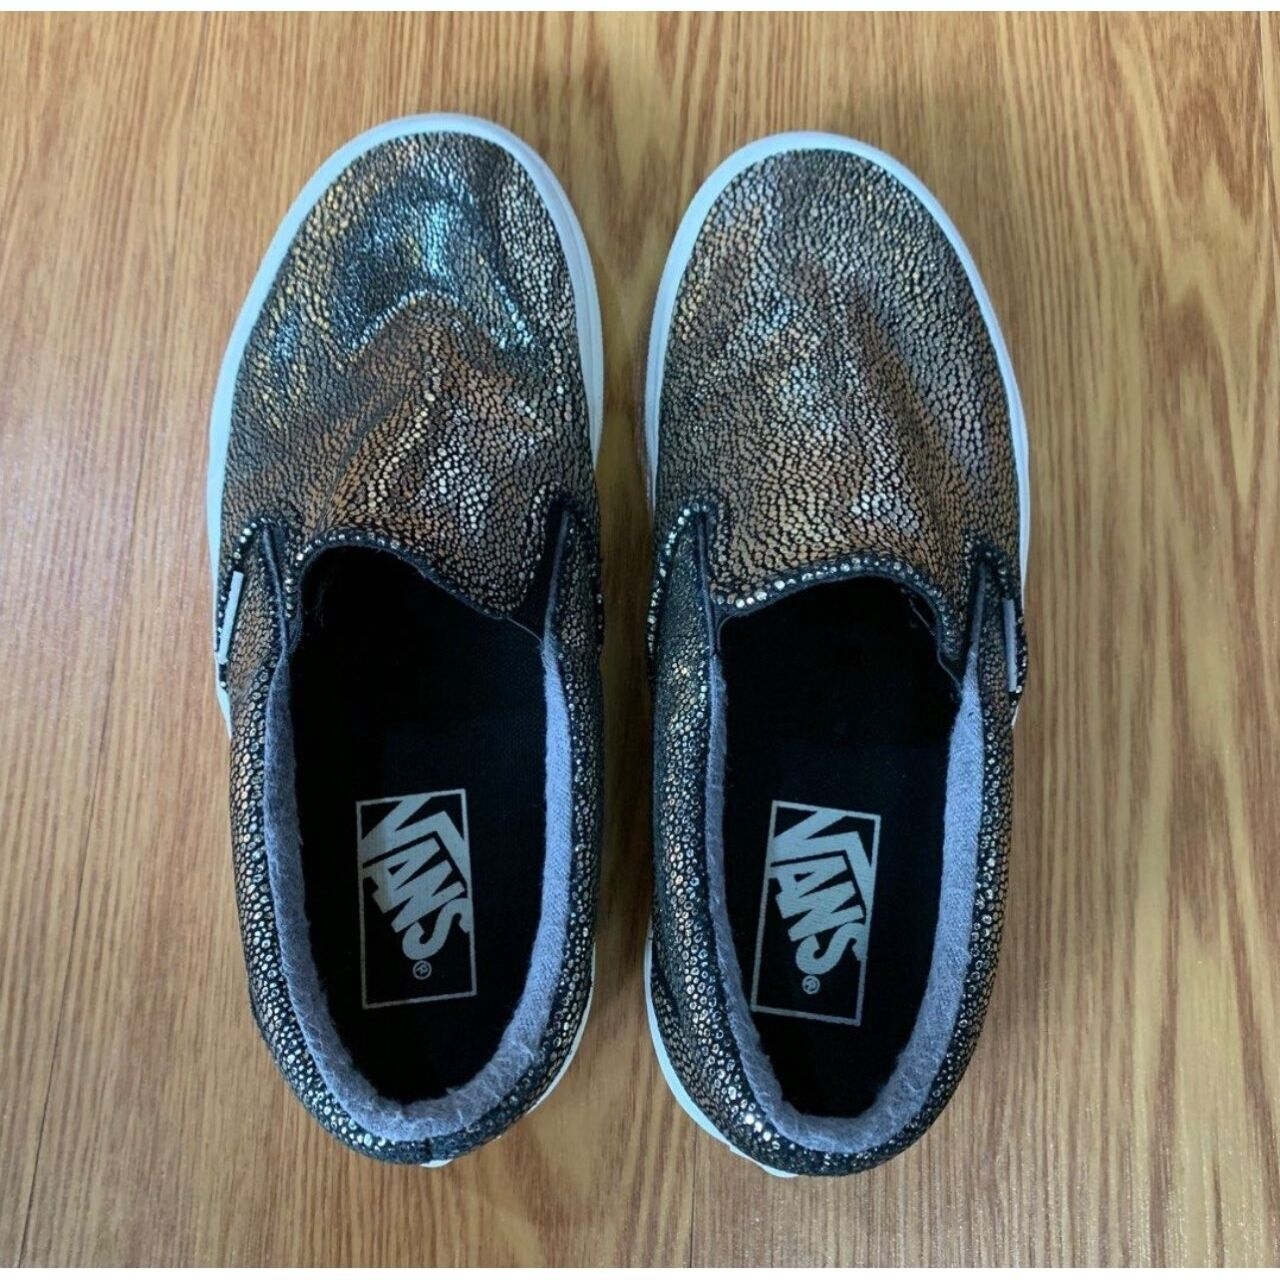 Vans Gold Dot Slip-On Sneakers